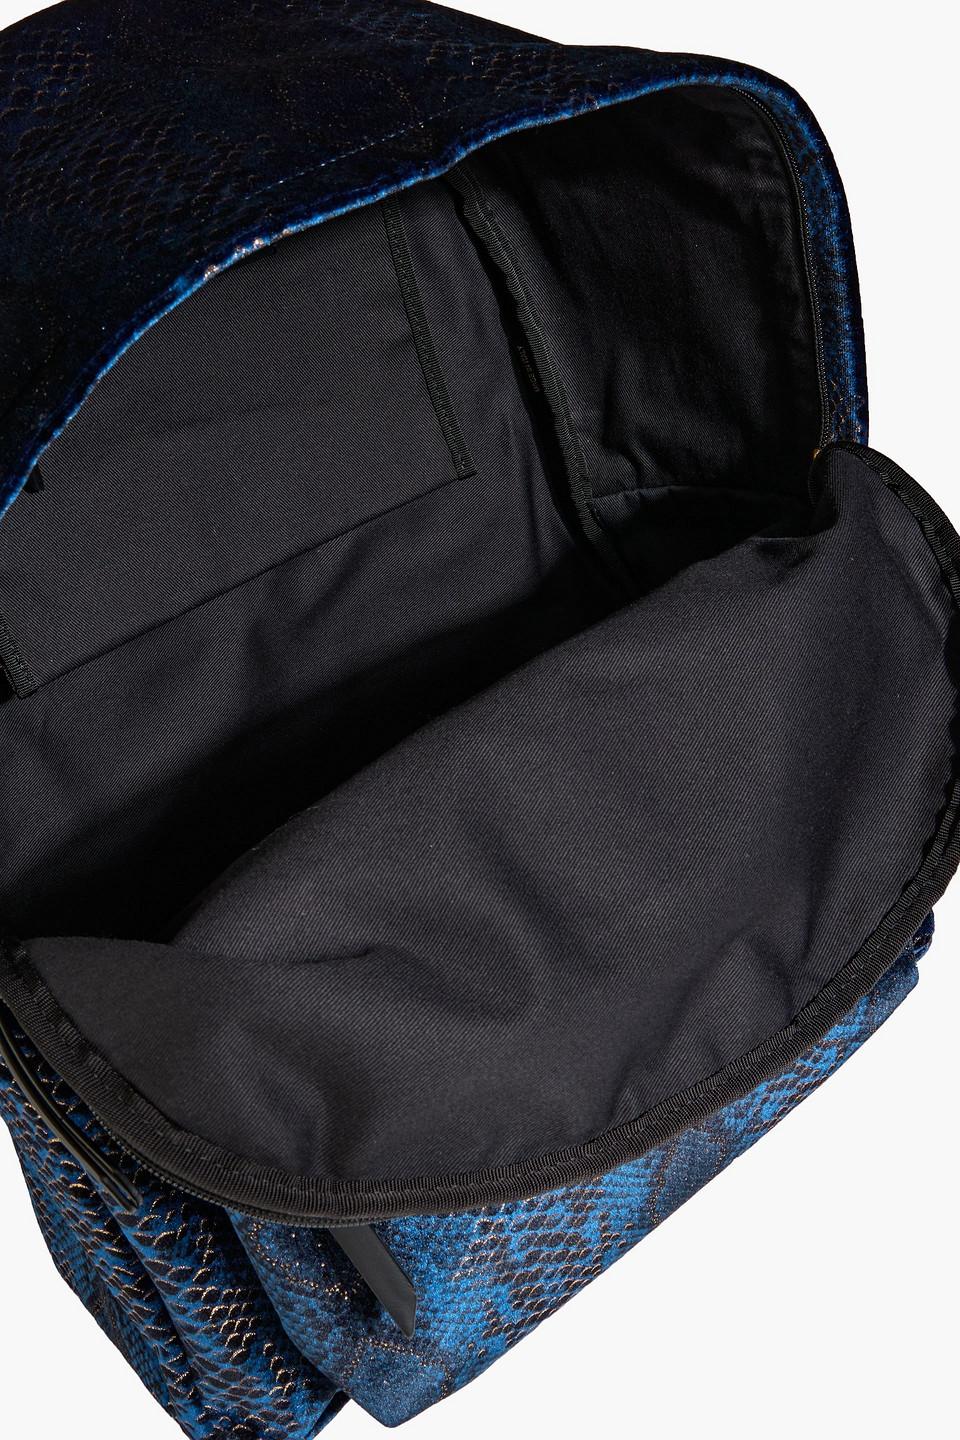 Giuseppe Zanotti Metallic Snake-print Velvet Backpack in Blue | Lyst